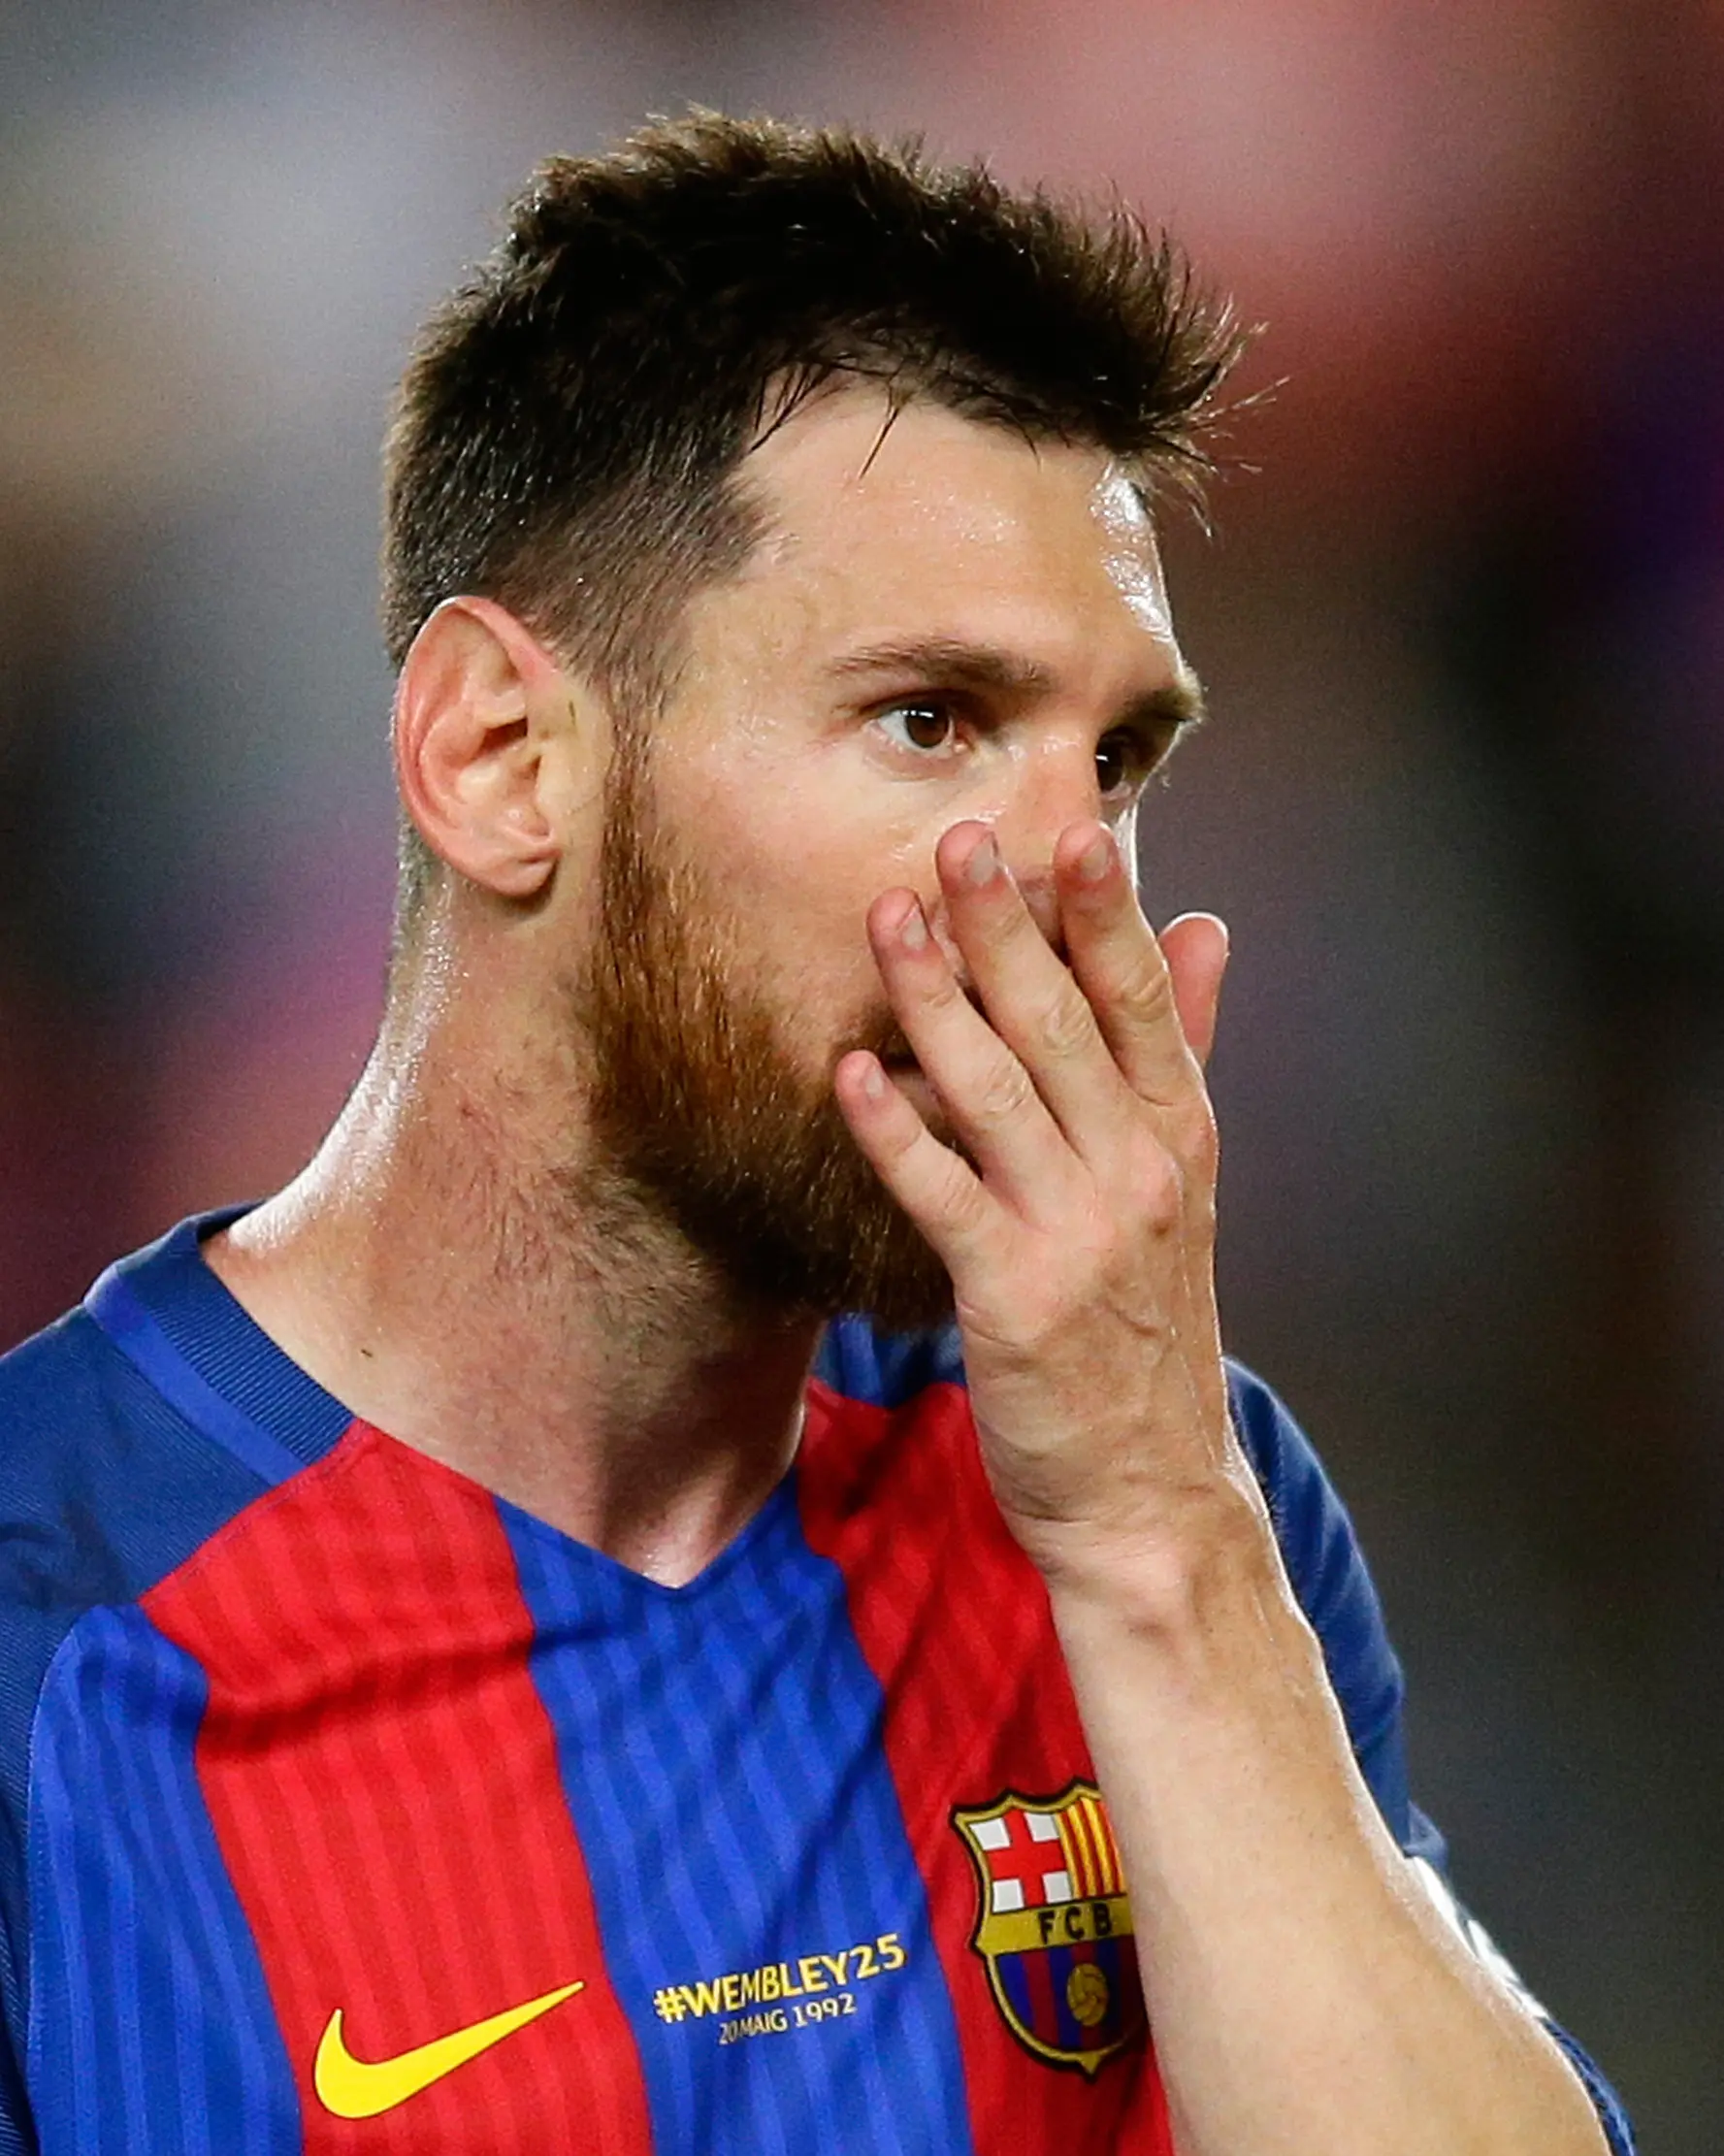 Lionel Messi usai pertandingan melawan Eibar di stadion Camp Nou, Barcelona, Spanyol,(21/5). Barcelona harus puas menjadi runner-up pada musim ini. Blaugrana berjarak tiga poin dari Madrid yang merebut gelar juara. (AP Photo / Manu Fernandez)